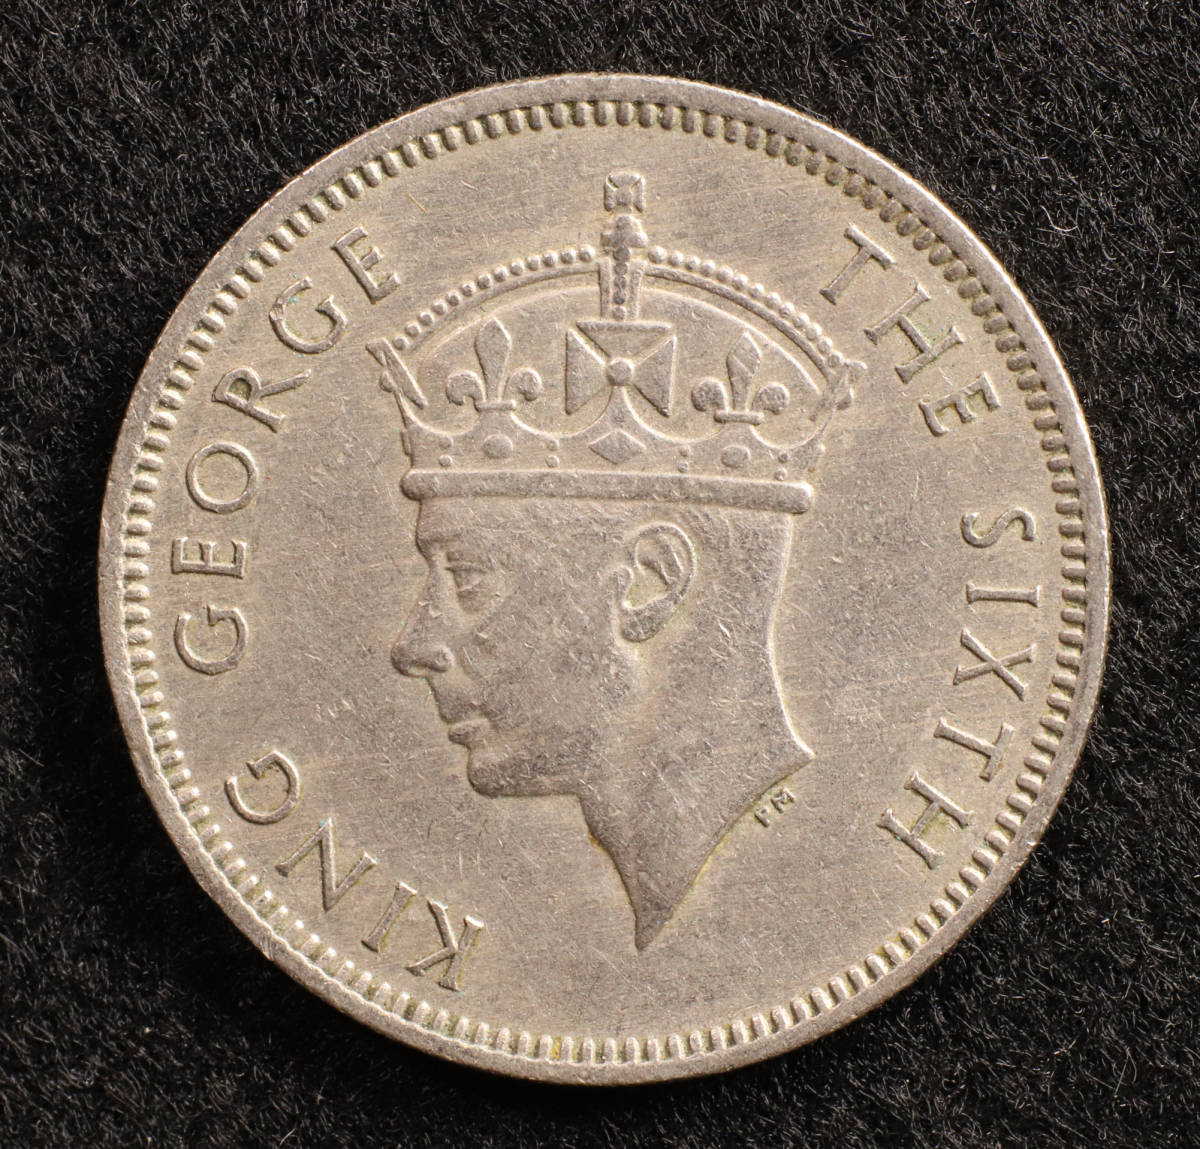 保障できる マラヤ及びイギリス領ボルネオ、エリザベス2世20セント1957 